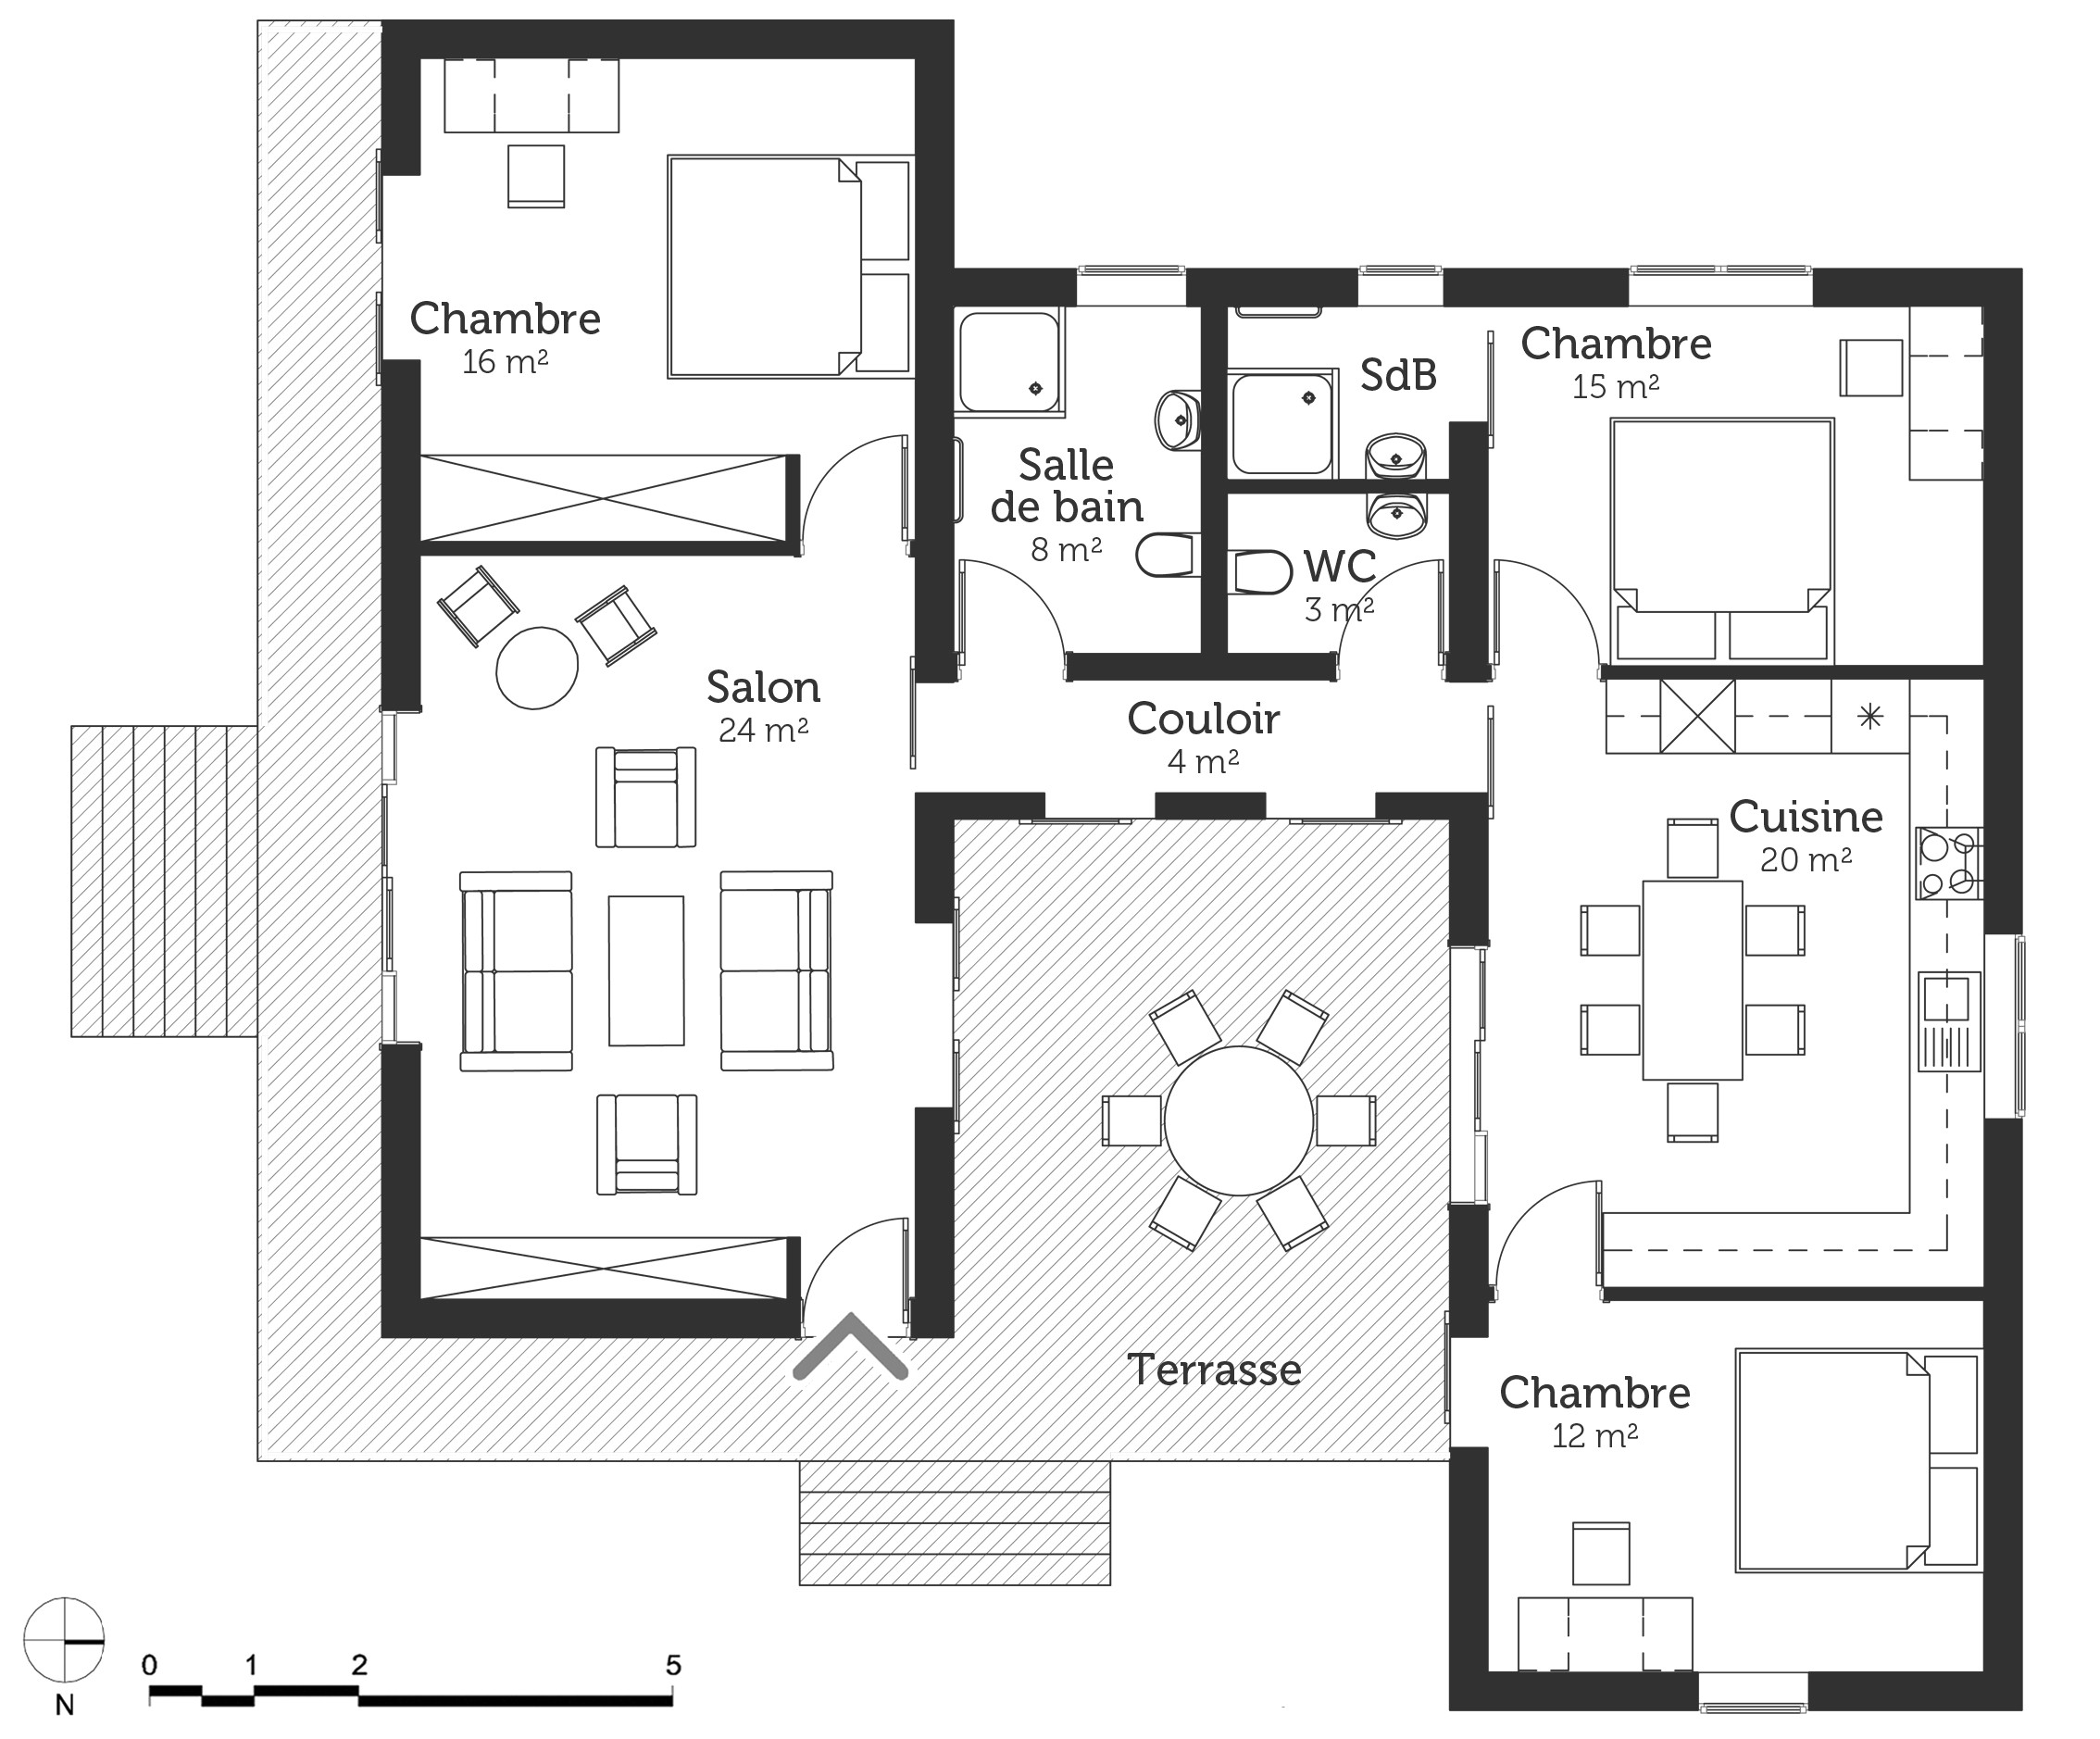 Plan de maison moderne gratuit toit plat